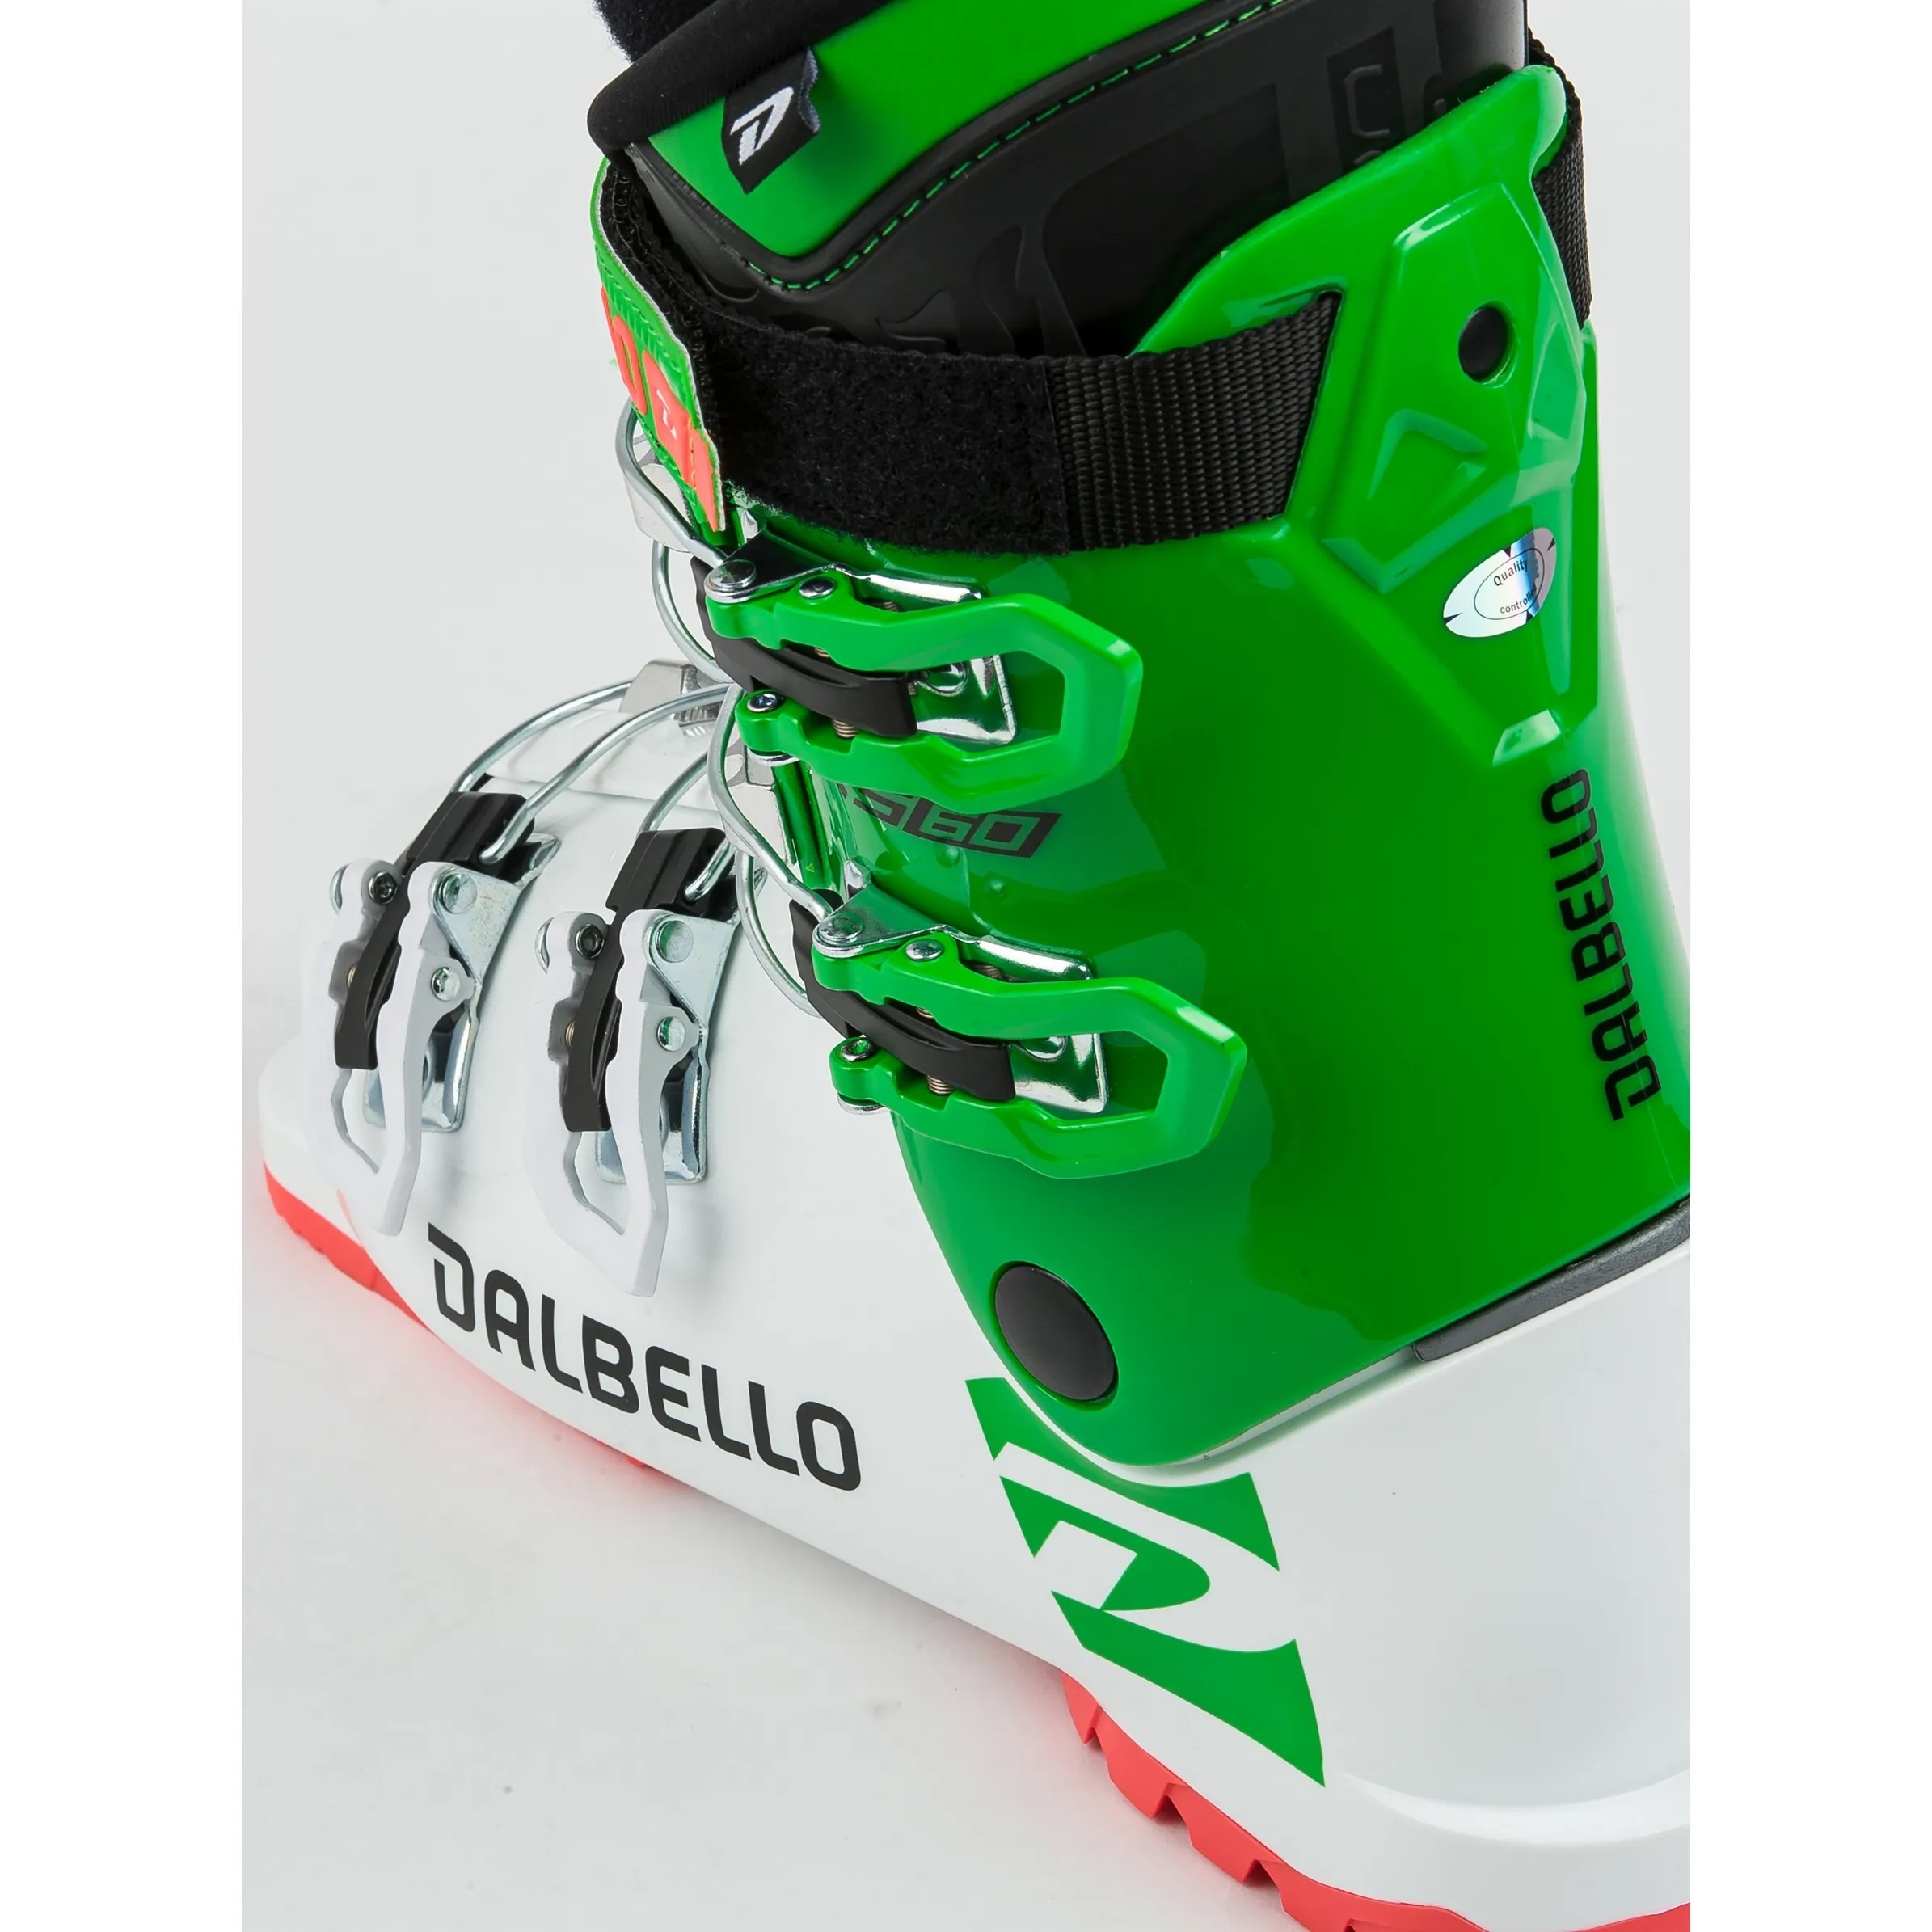 Clăpari Ski -  dalbello DRS 60 JR